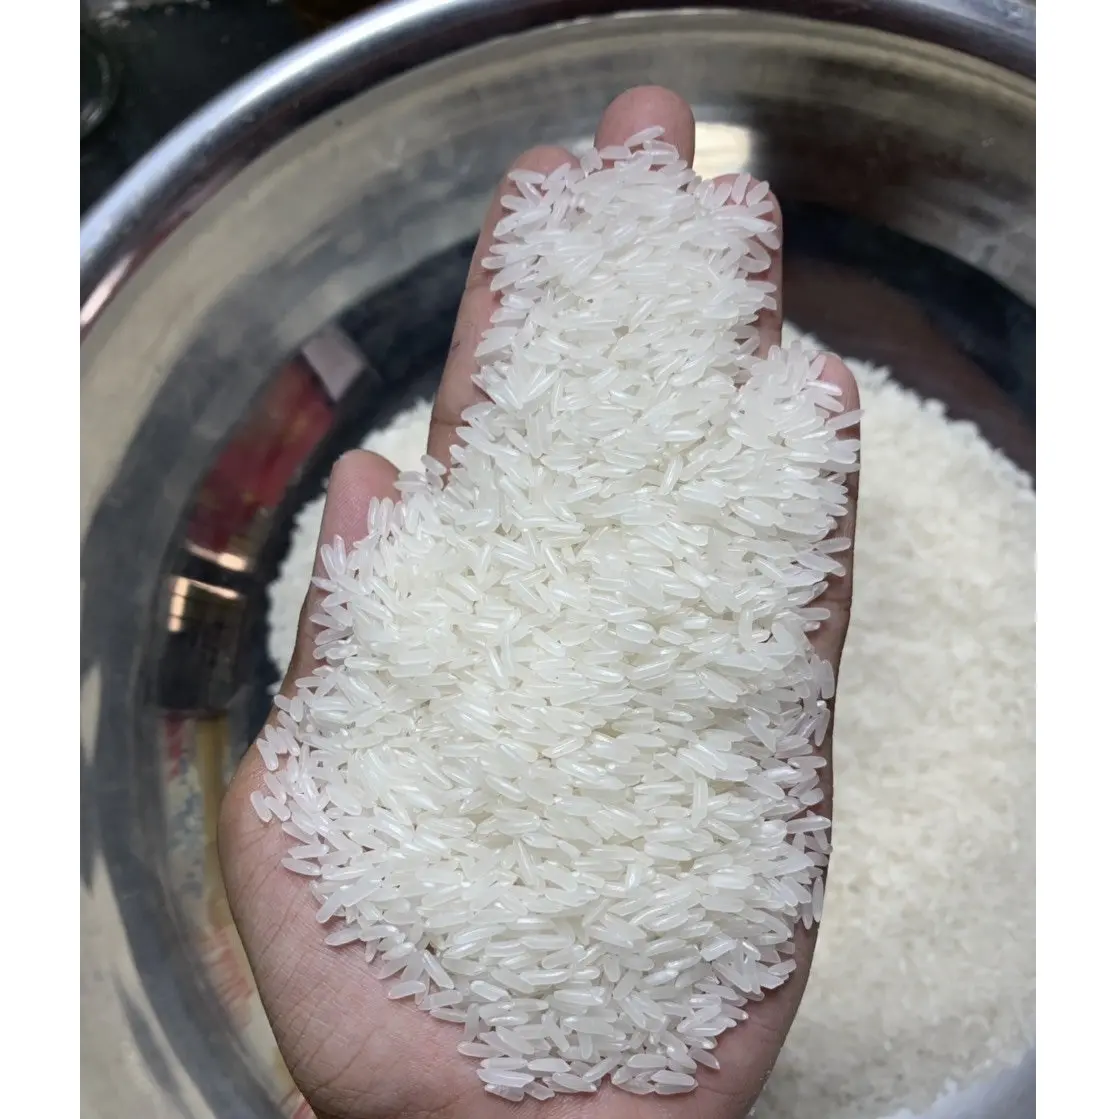 वियतनामी जैस्मीन चावल | मजबूत इत्र, कीटनाशकों और भारी धातु से मुक्त | व्हाट्सएप: +84-915355383